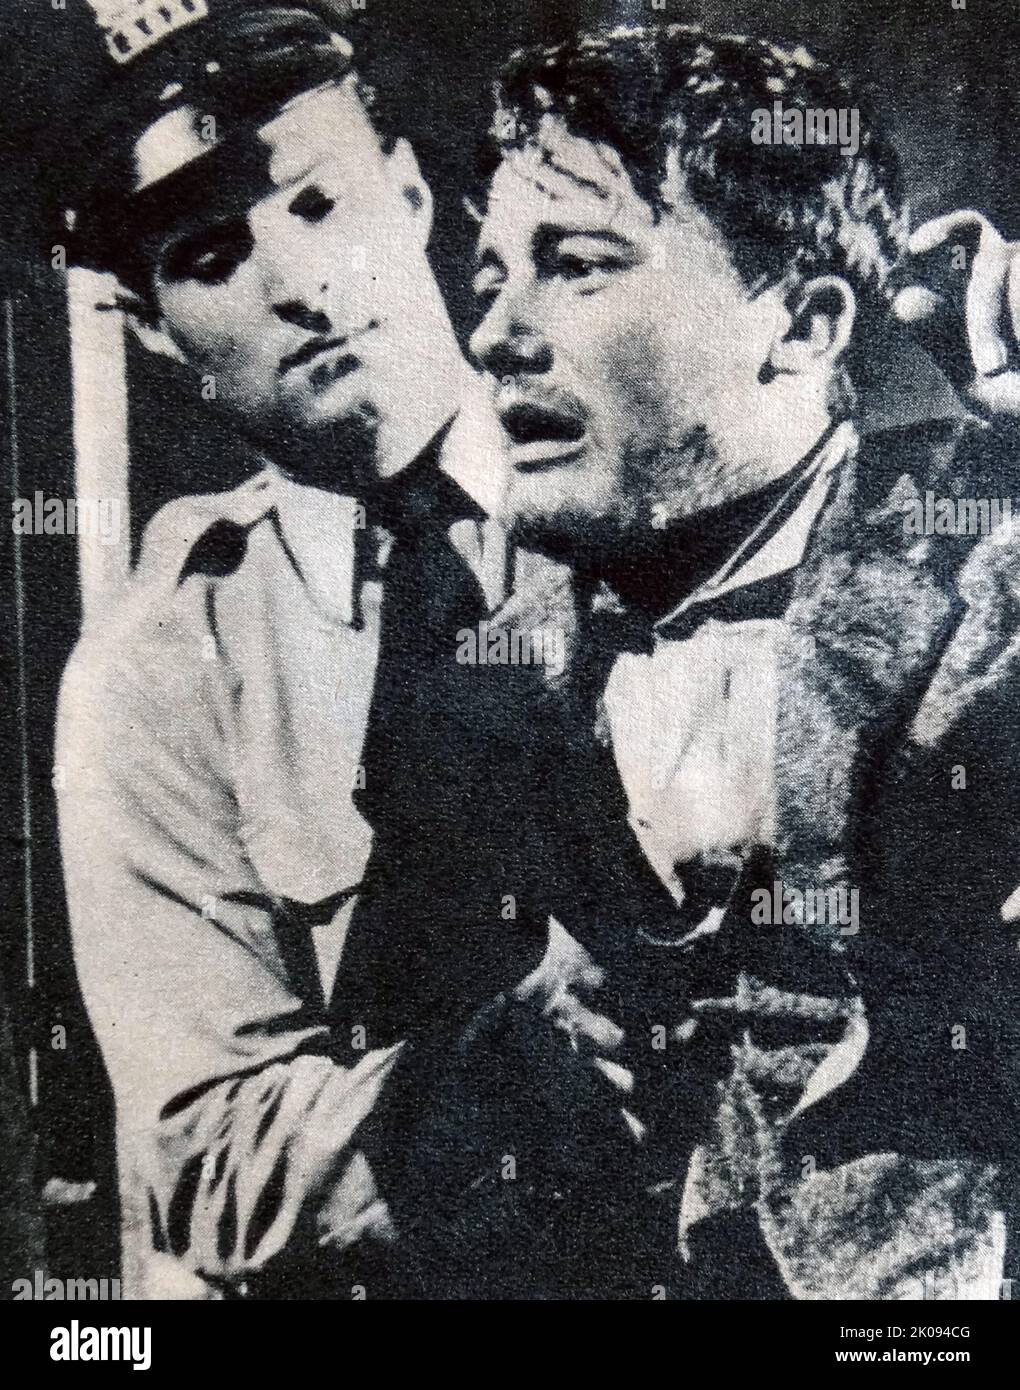 Recensione del giornale del film City in the Jungle del 1959, con Robert Vaughn. Robert Francis Vaughn (22 novembre 1932 – 11 novembre 2016) è stato un . Foto Stock